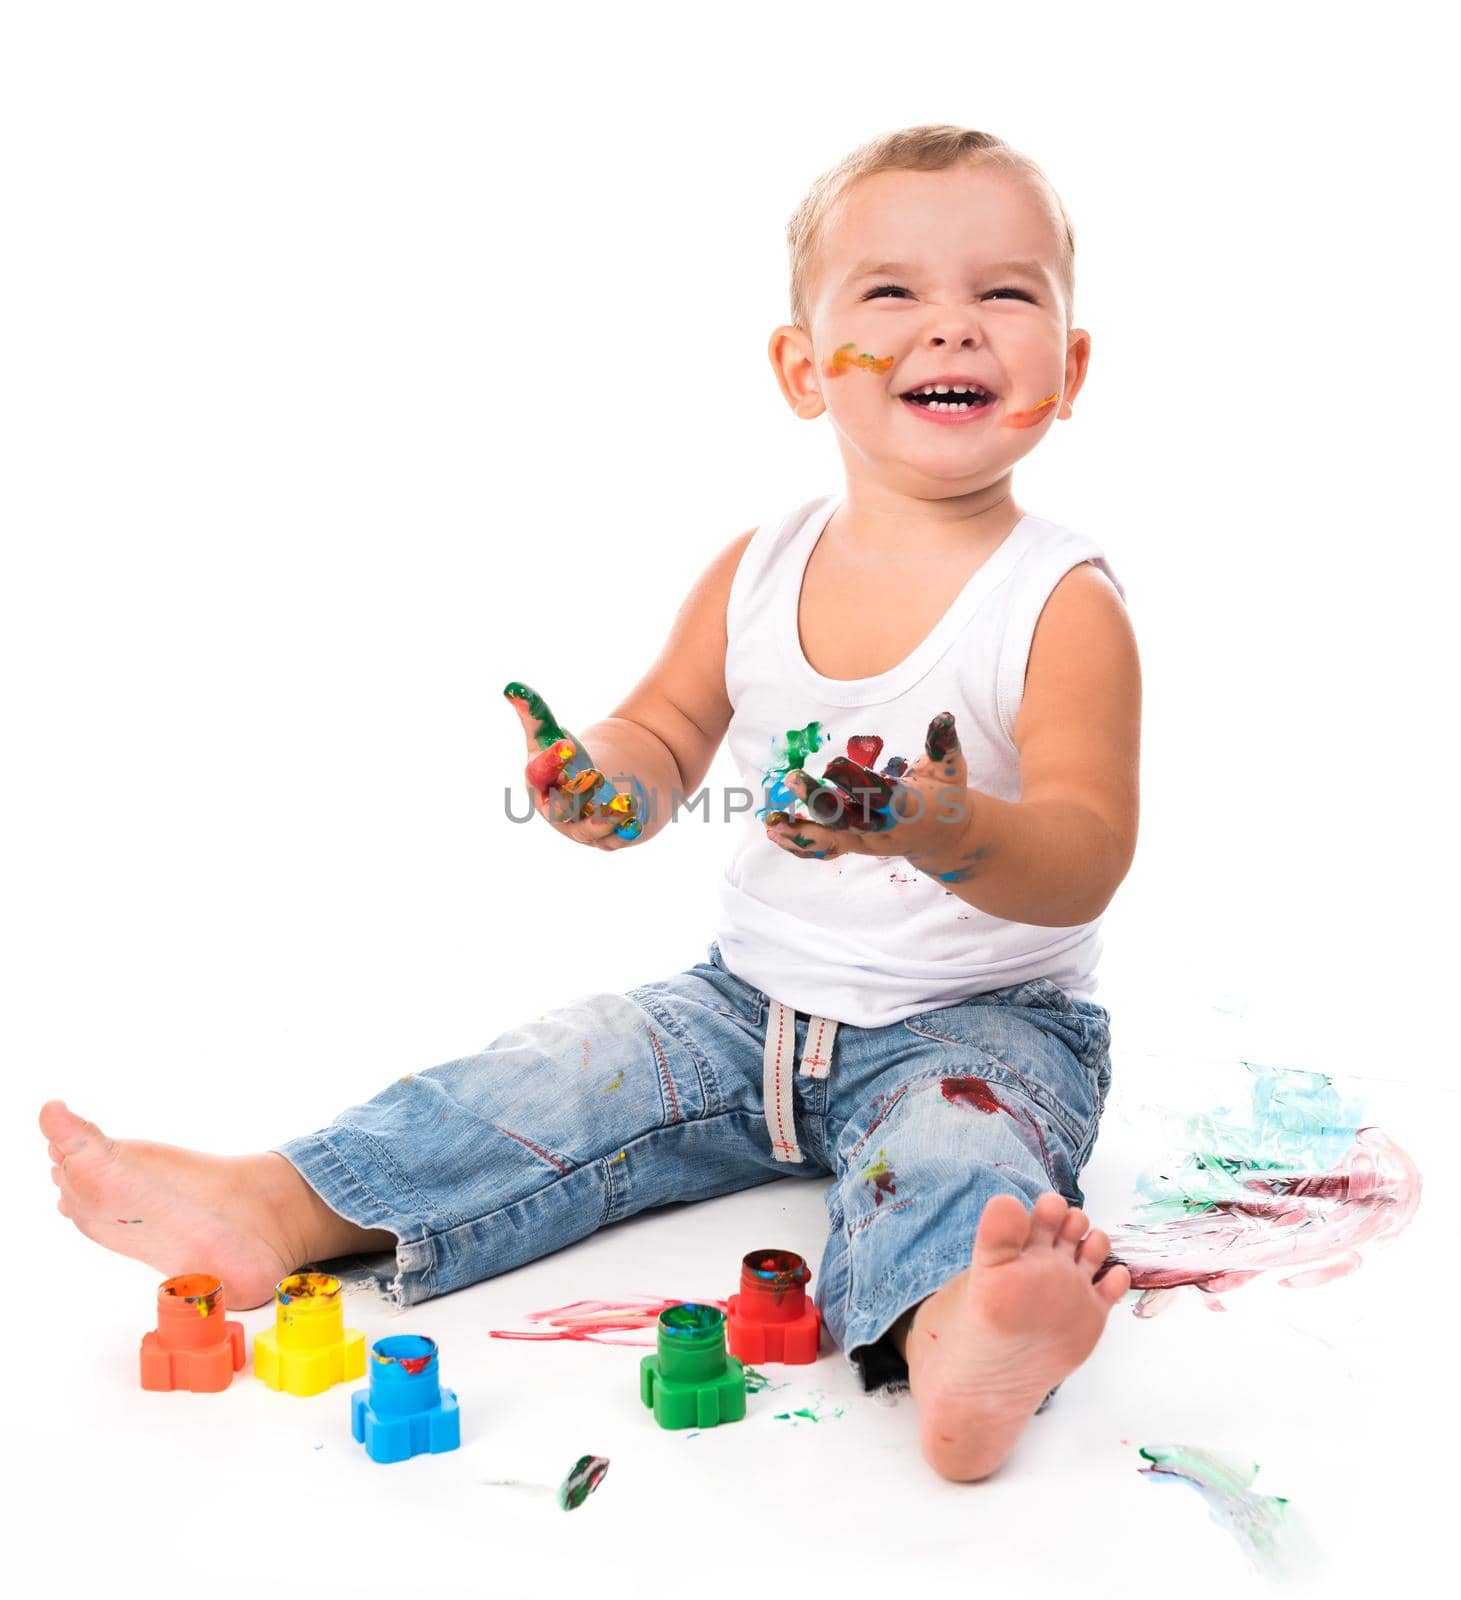 joyful little boy with paints by GekaSkr